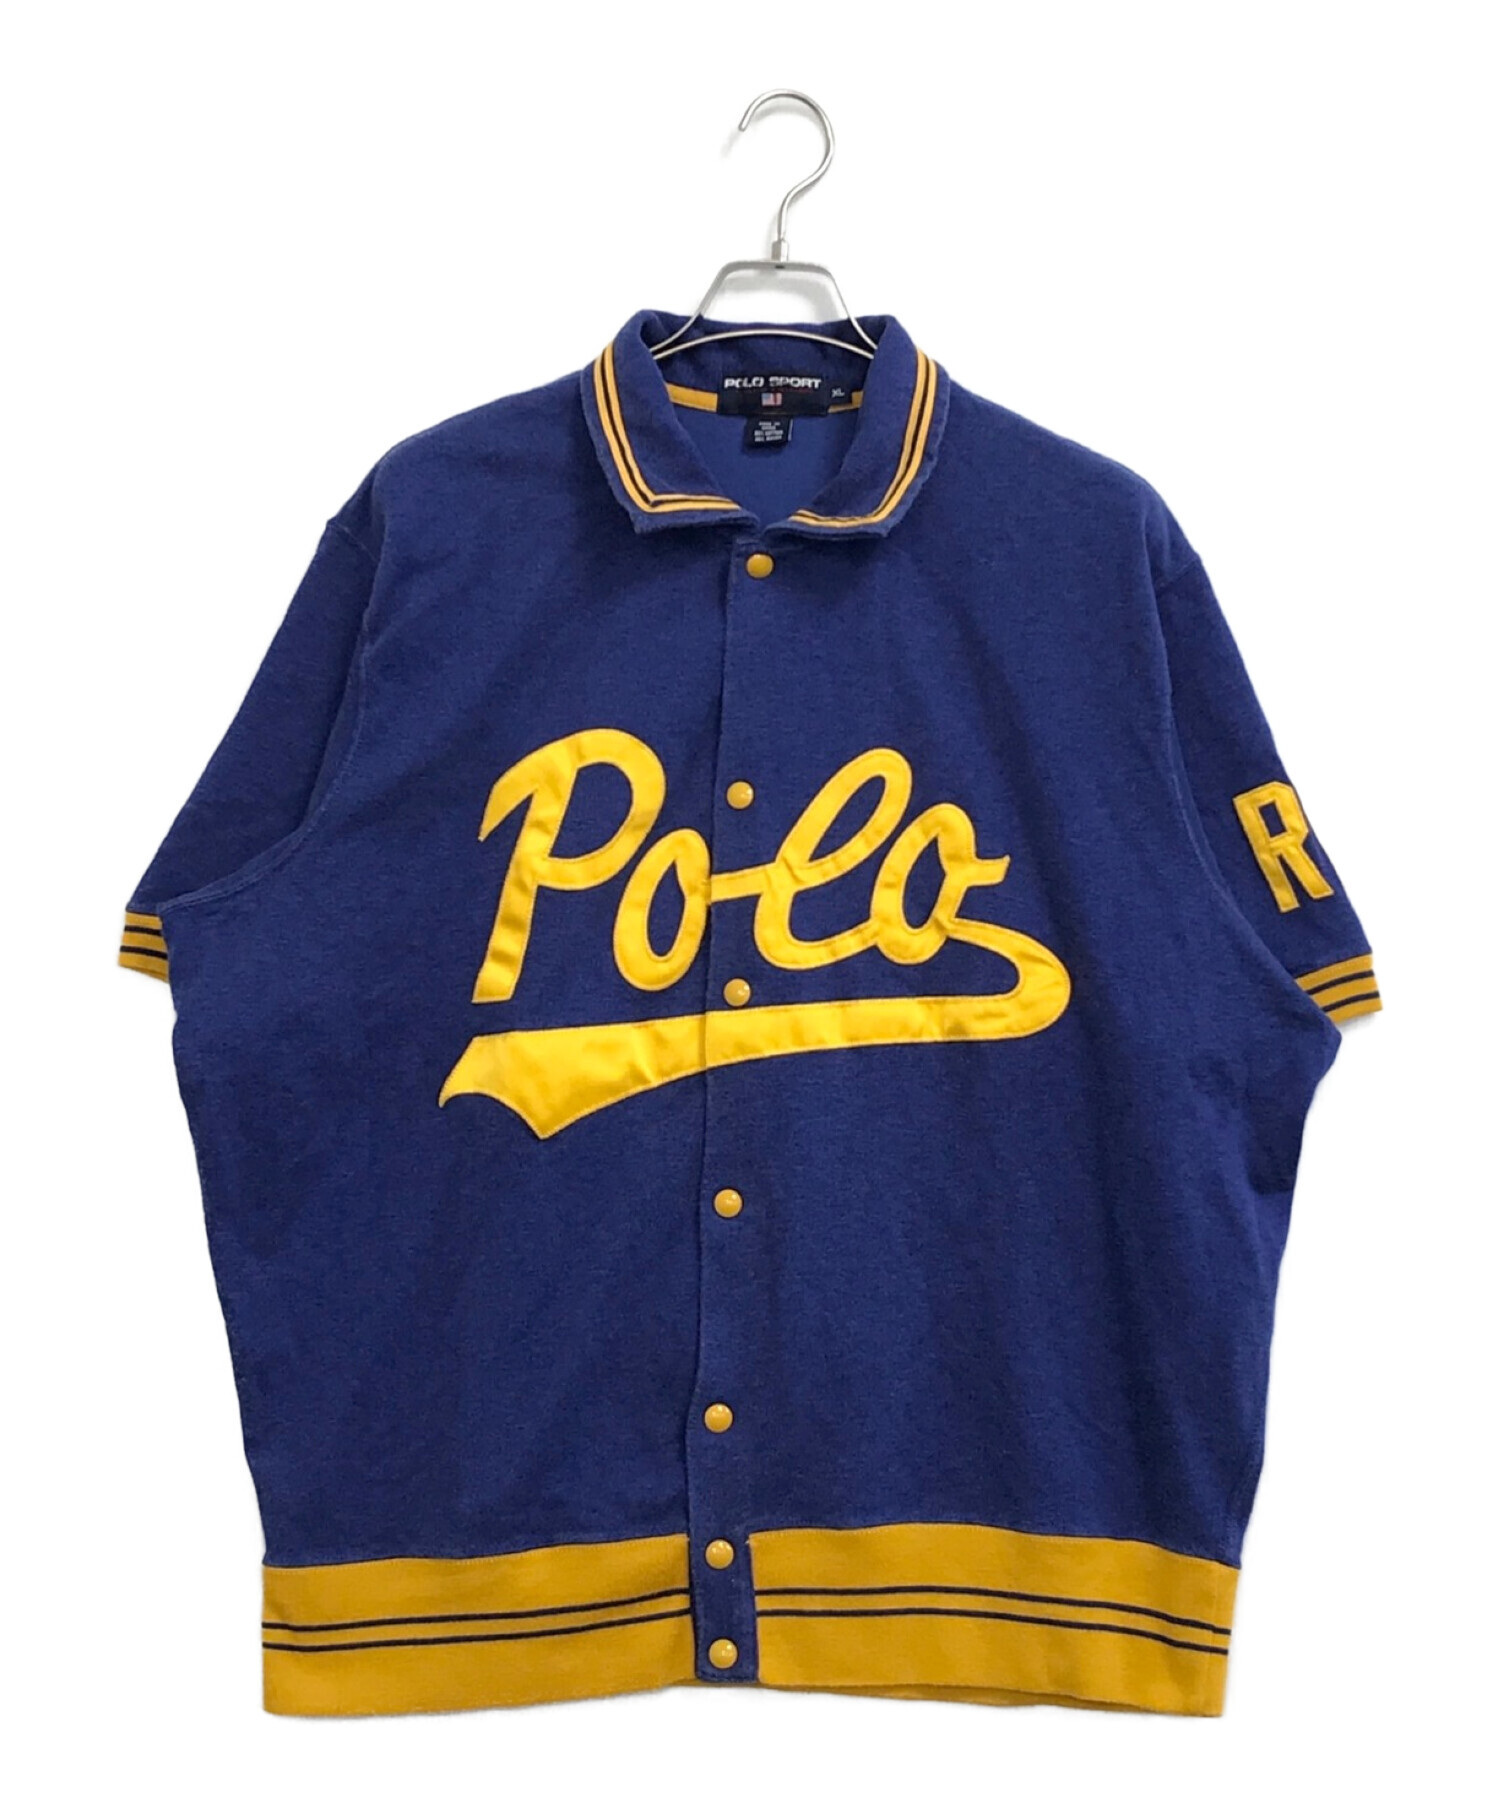 POLO SPORT (ポロスポーツ) [古着]90sベースボールシャツ ネイビー サイズ:XL